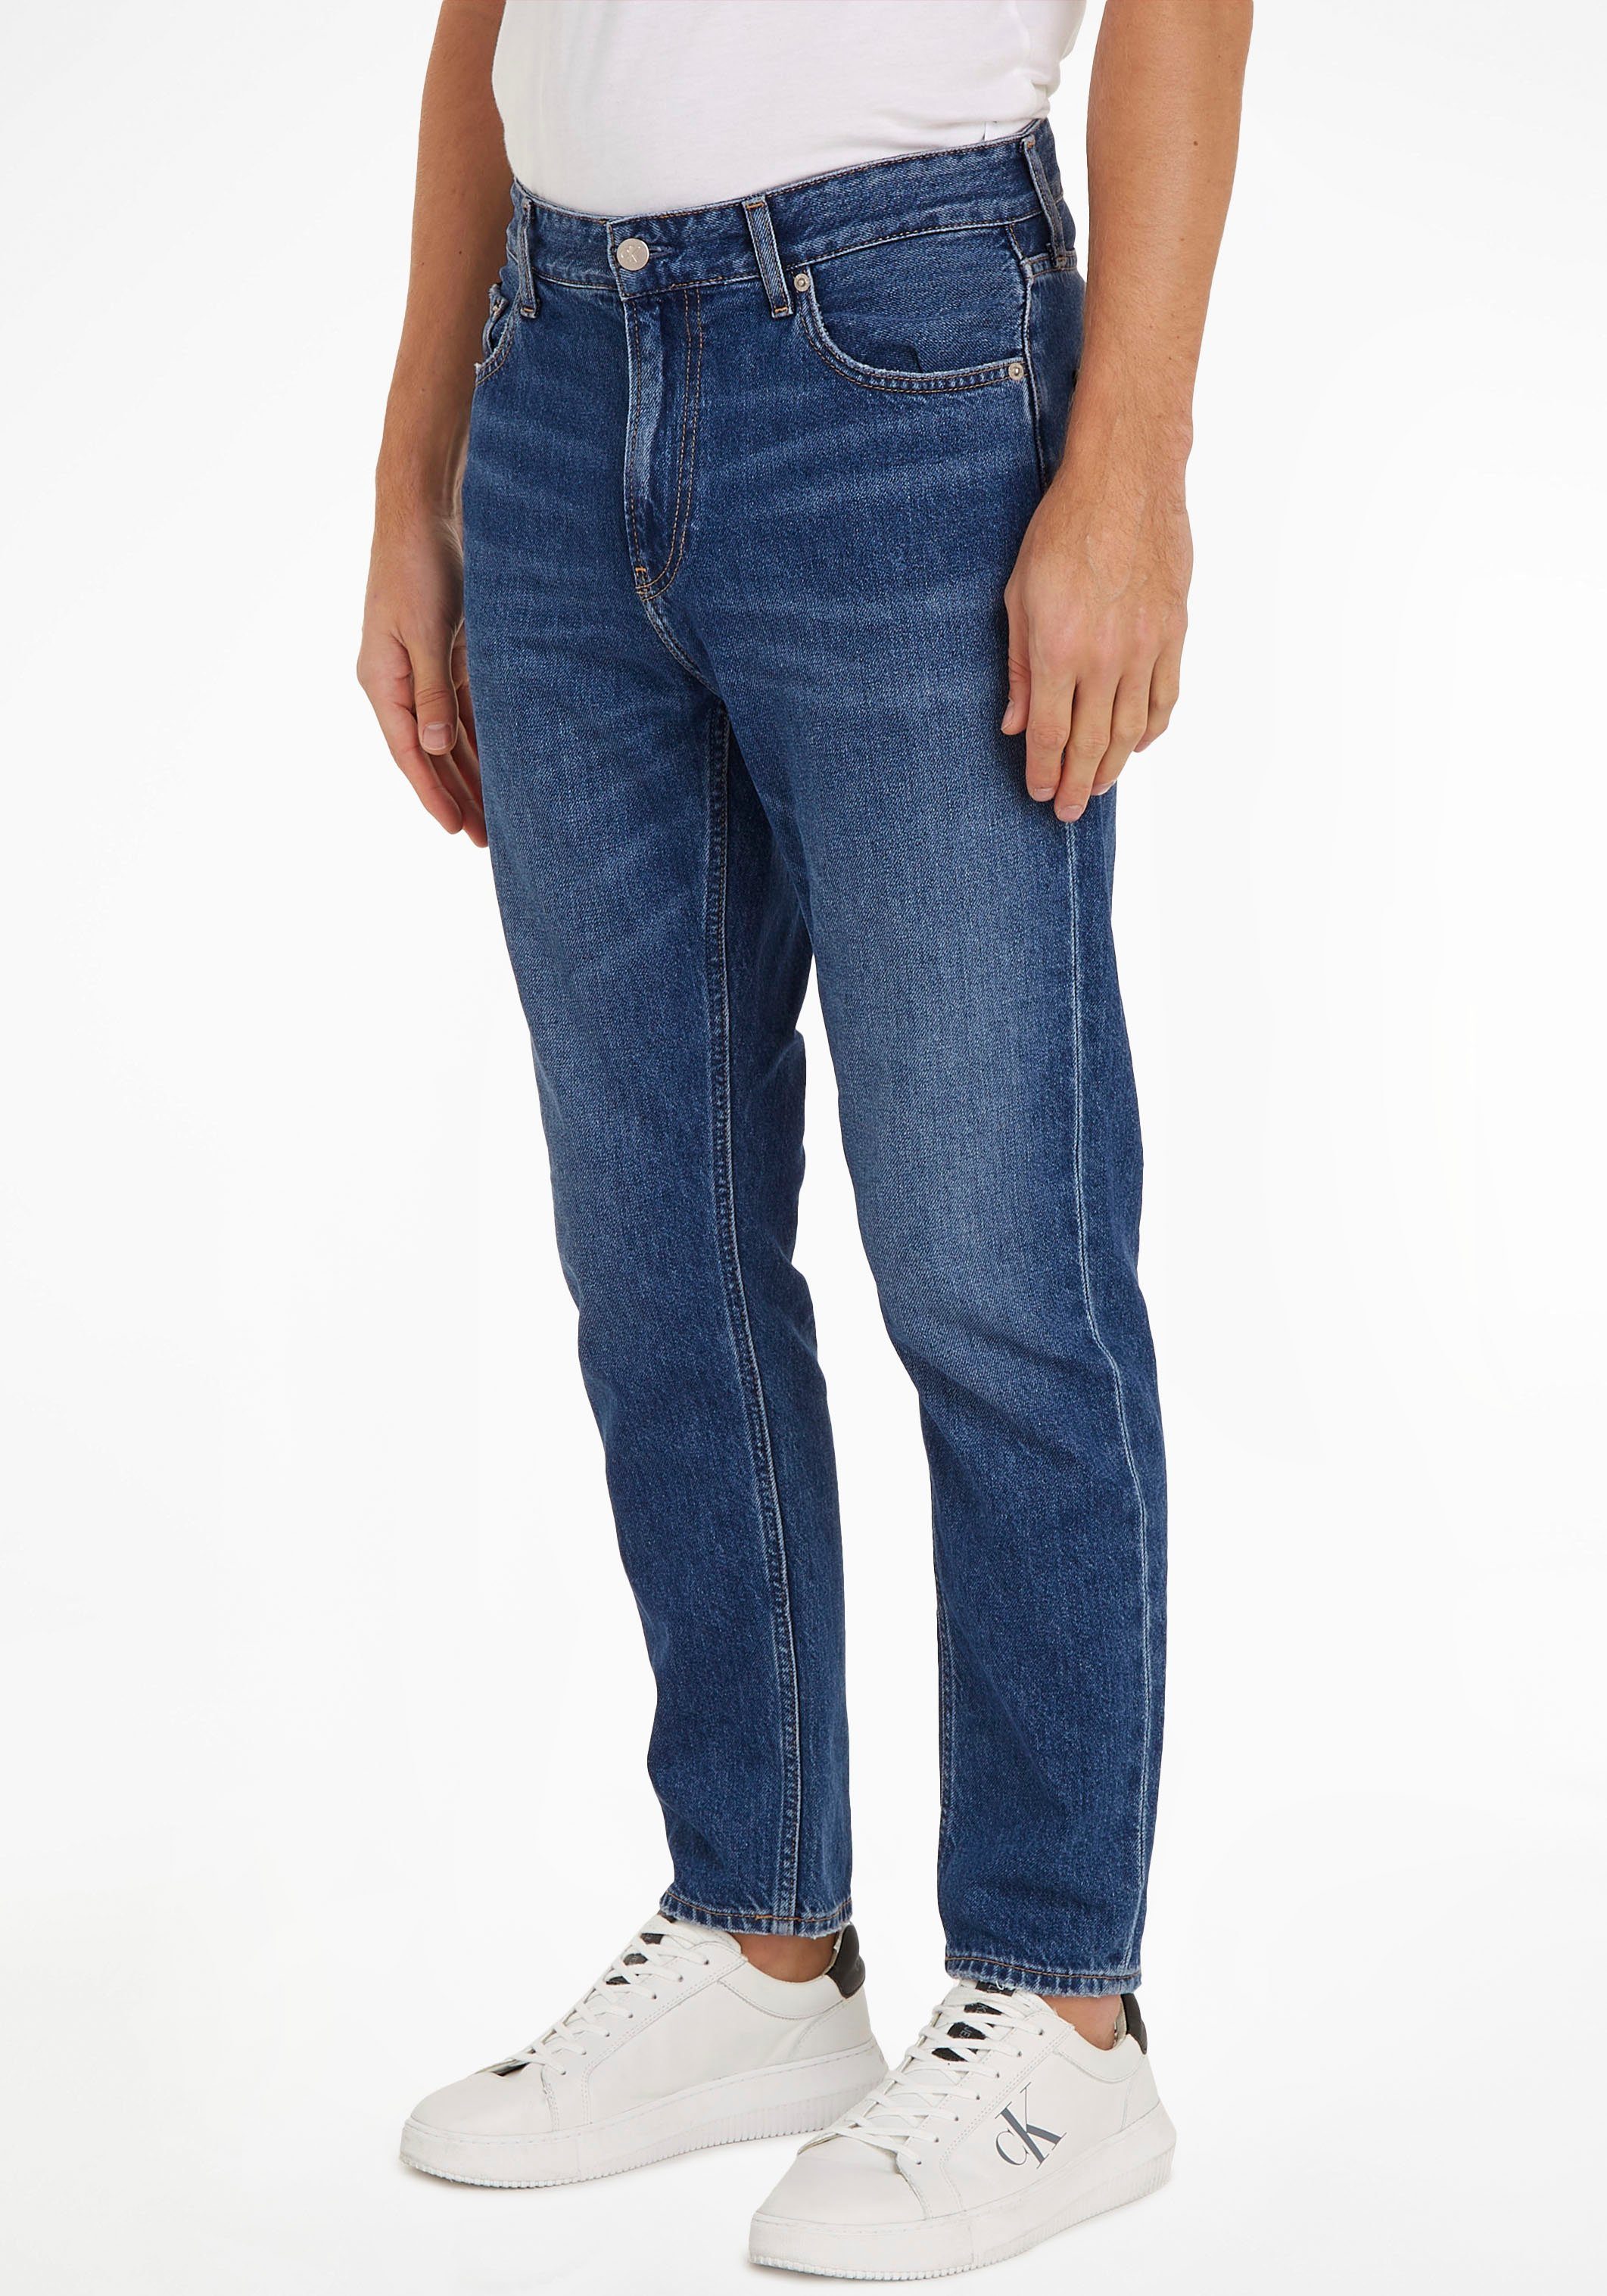 JEAN im Calvin blue_denim Jeans DAD Dad-Jeans 5-Pocket-Style Klein